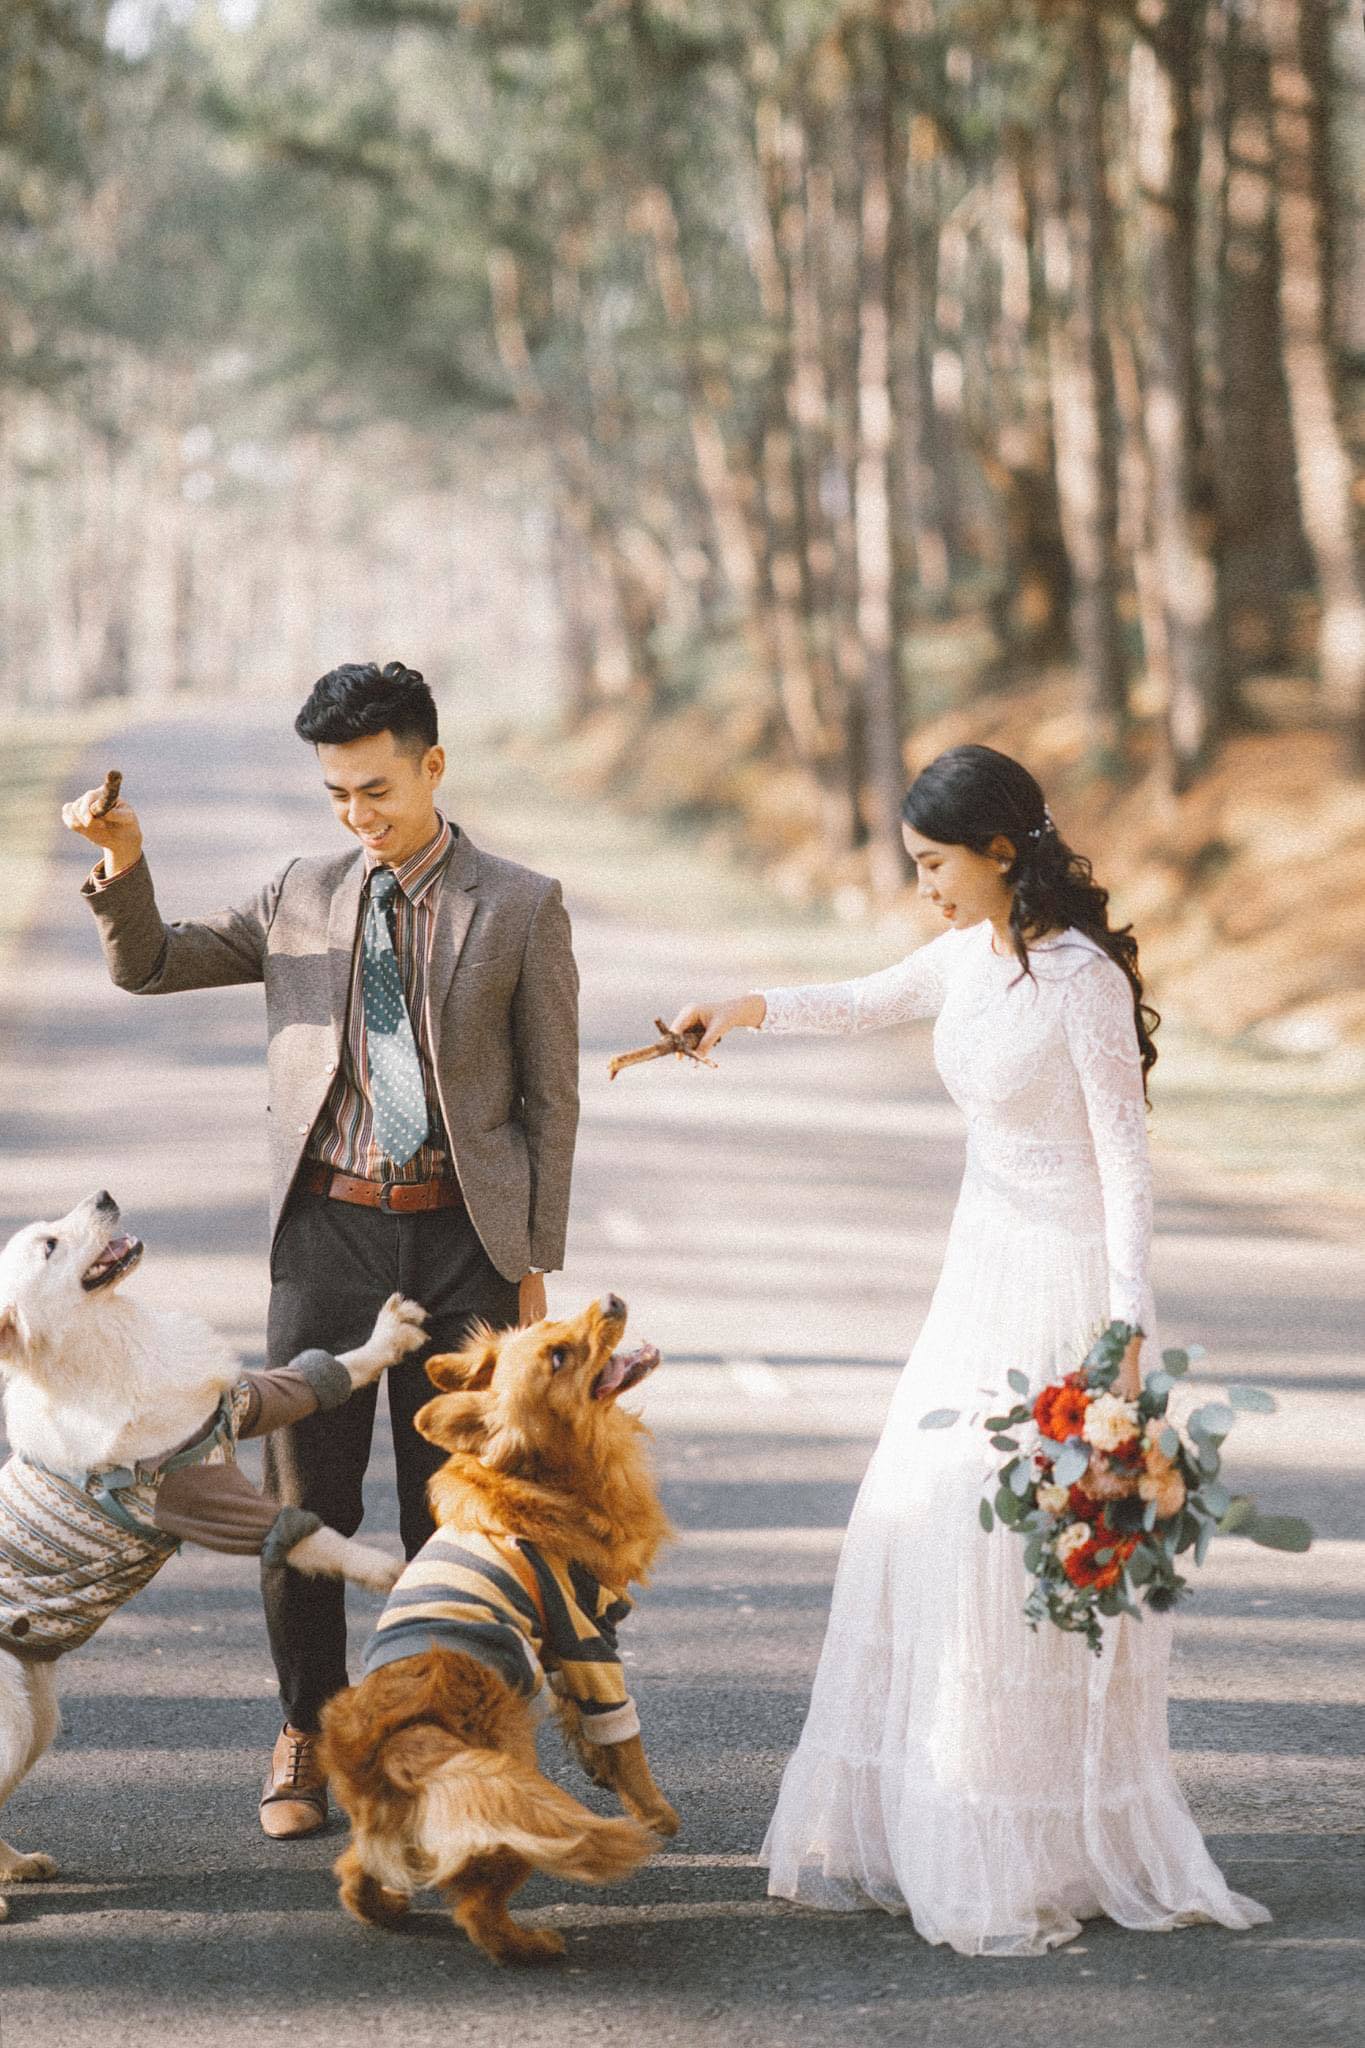 Chú chó đáng yêu của bạn sẽ làm cho bức ảnh cưới của bạn trở nên đậm chất tình thân để bạn có thể bảo vệ nhau trước mọi khó khăn cả cuộc đời này. Hãy cùng làm cho những bức ảnh cưới cún cưng của bạn được tràn đầy tình yêu và niềm đam mê thể hiện.